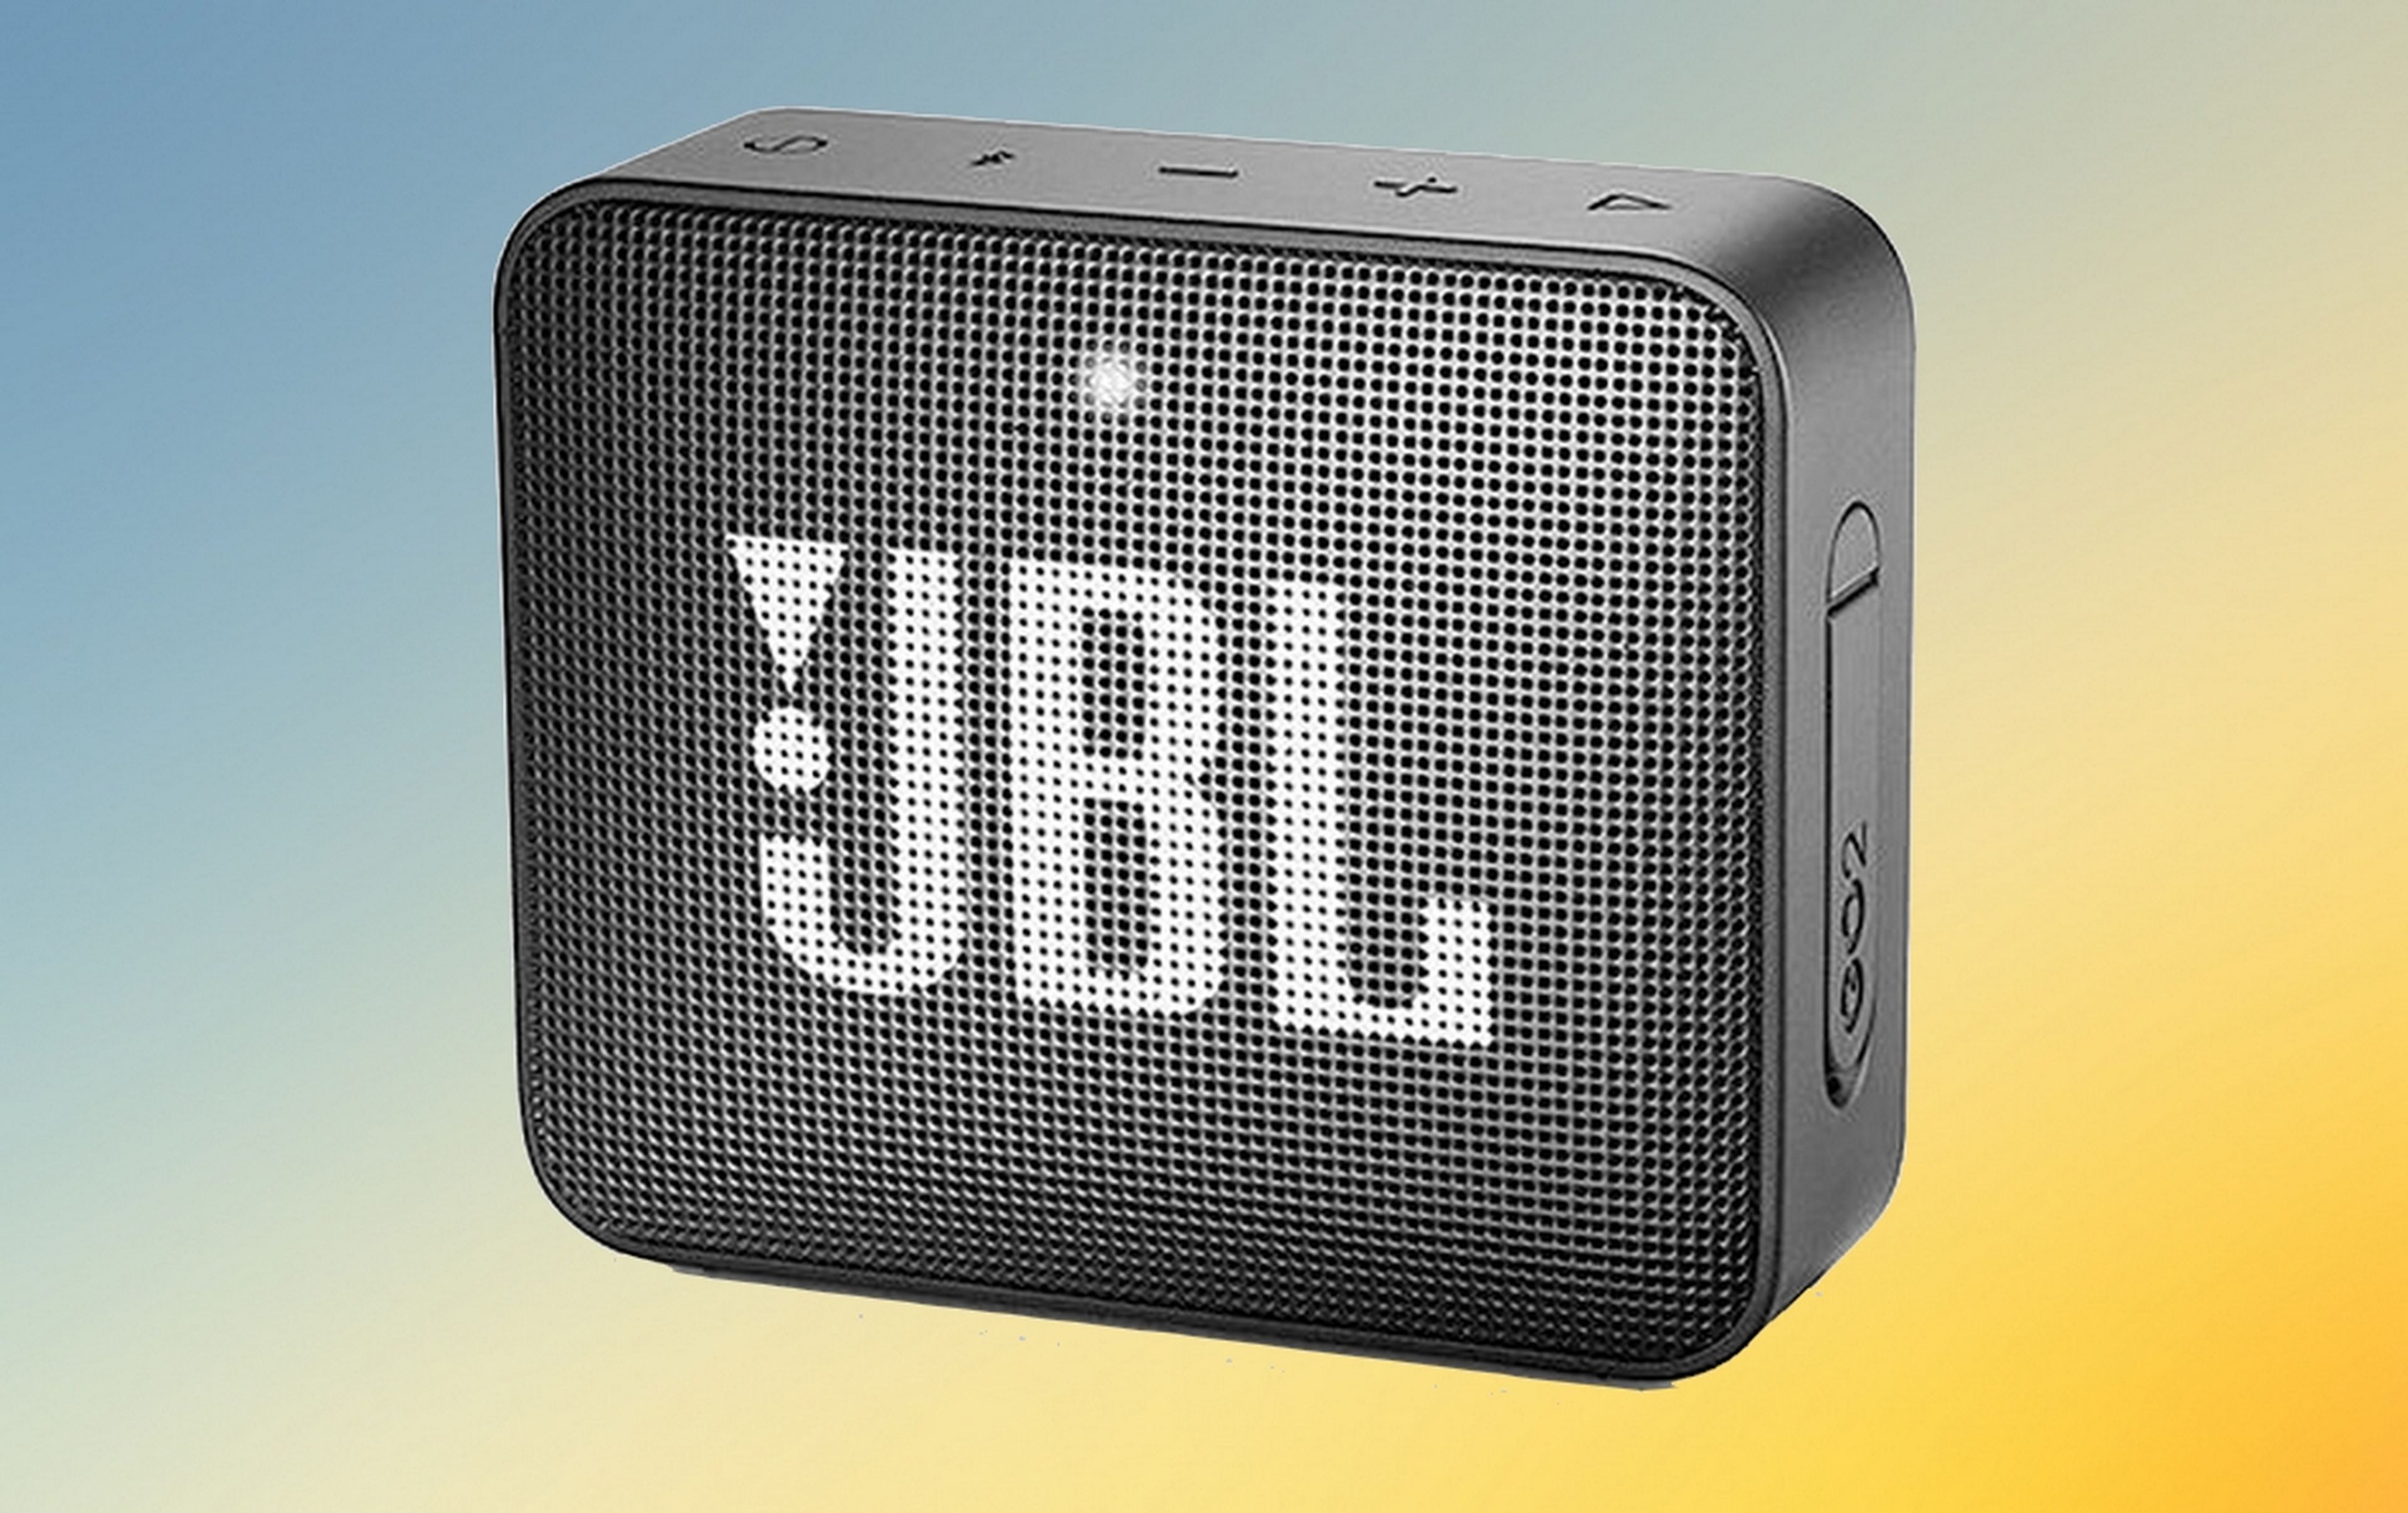 Este altavoz Bluetooth portátil y resistente al agua de JBL tiene descuento  y vale menos de 25 euros